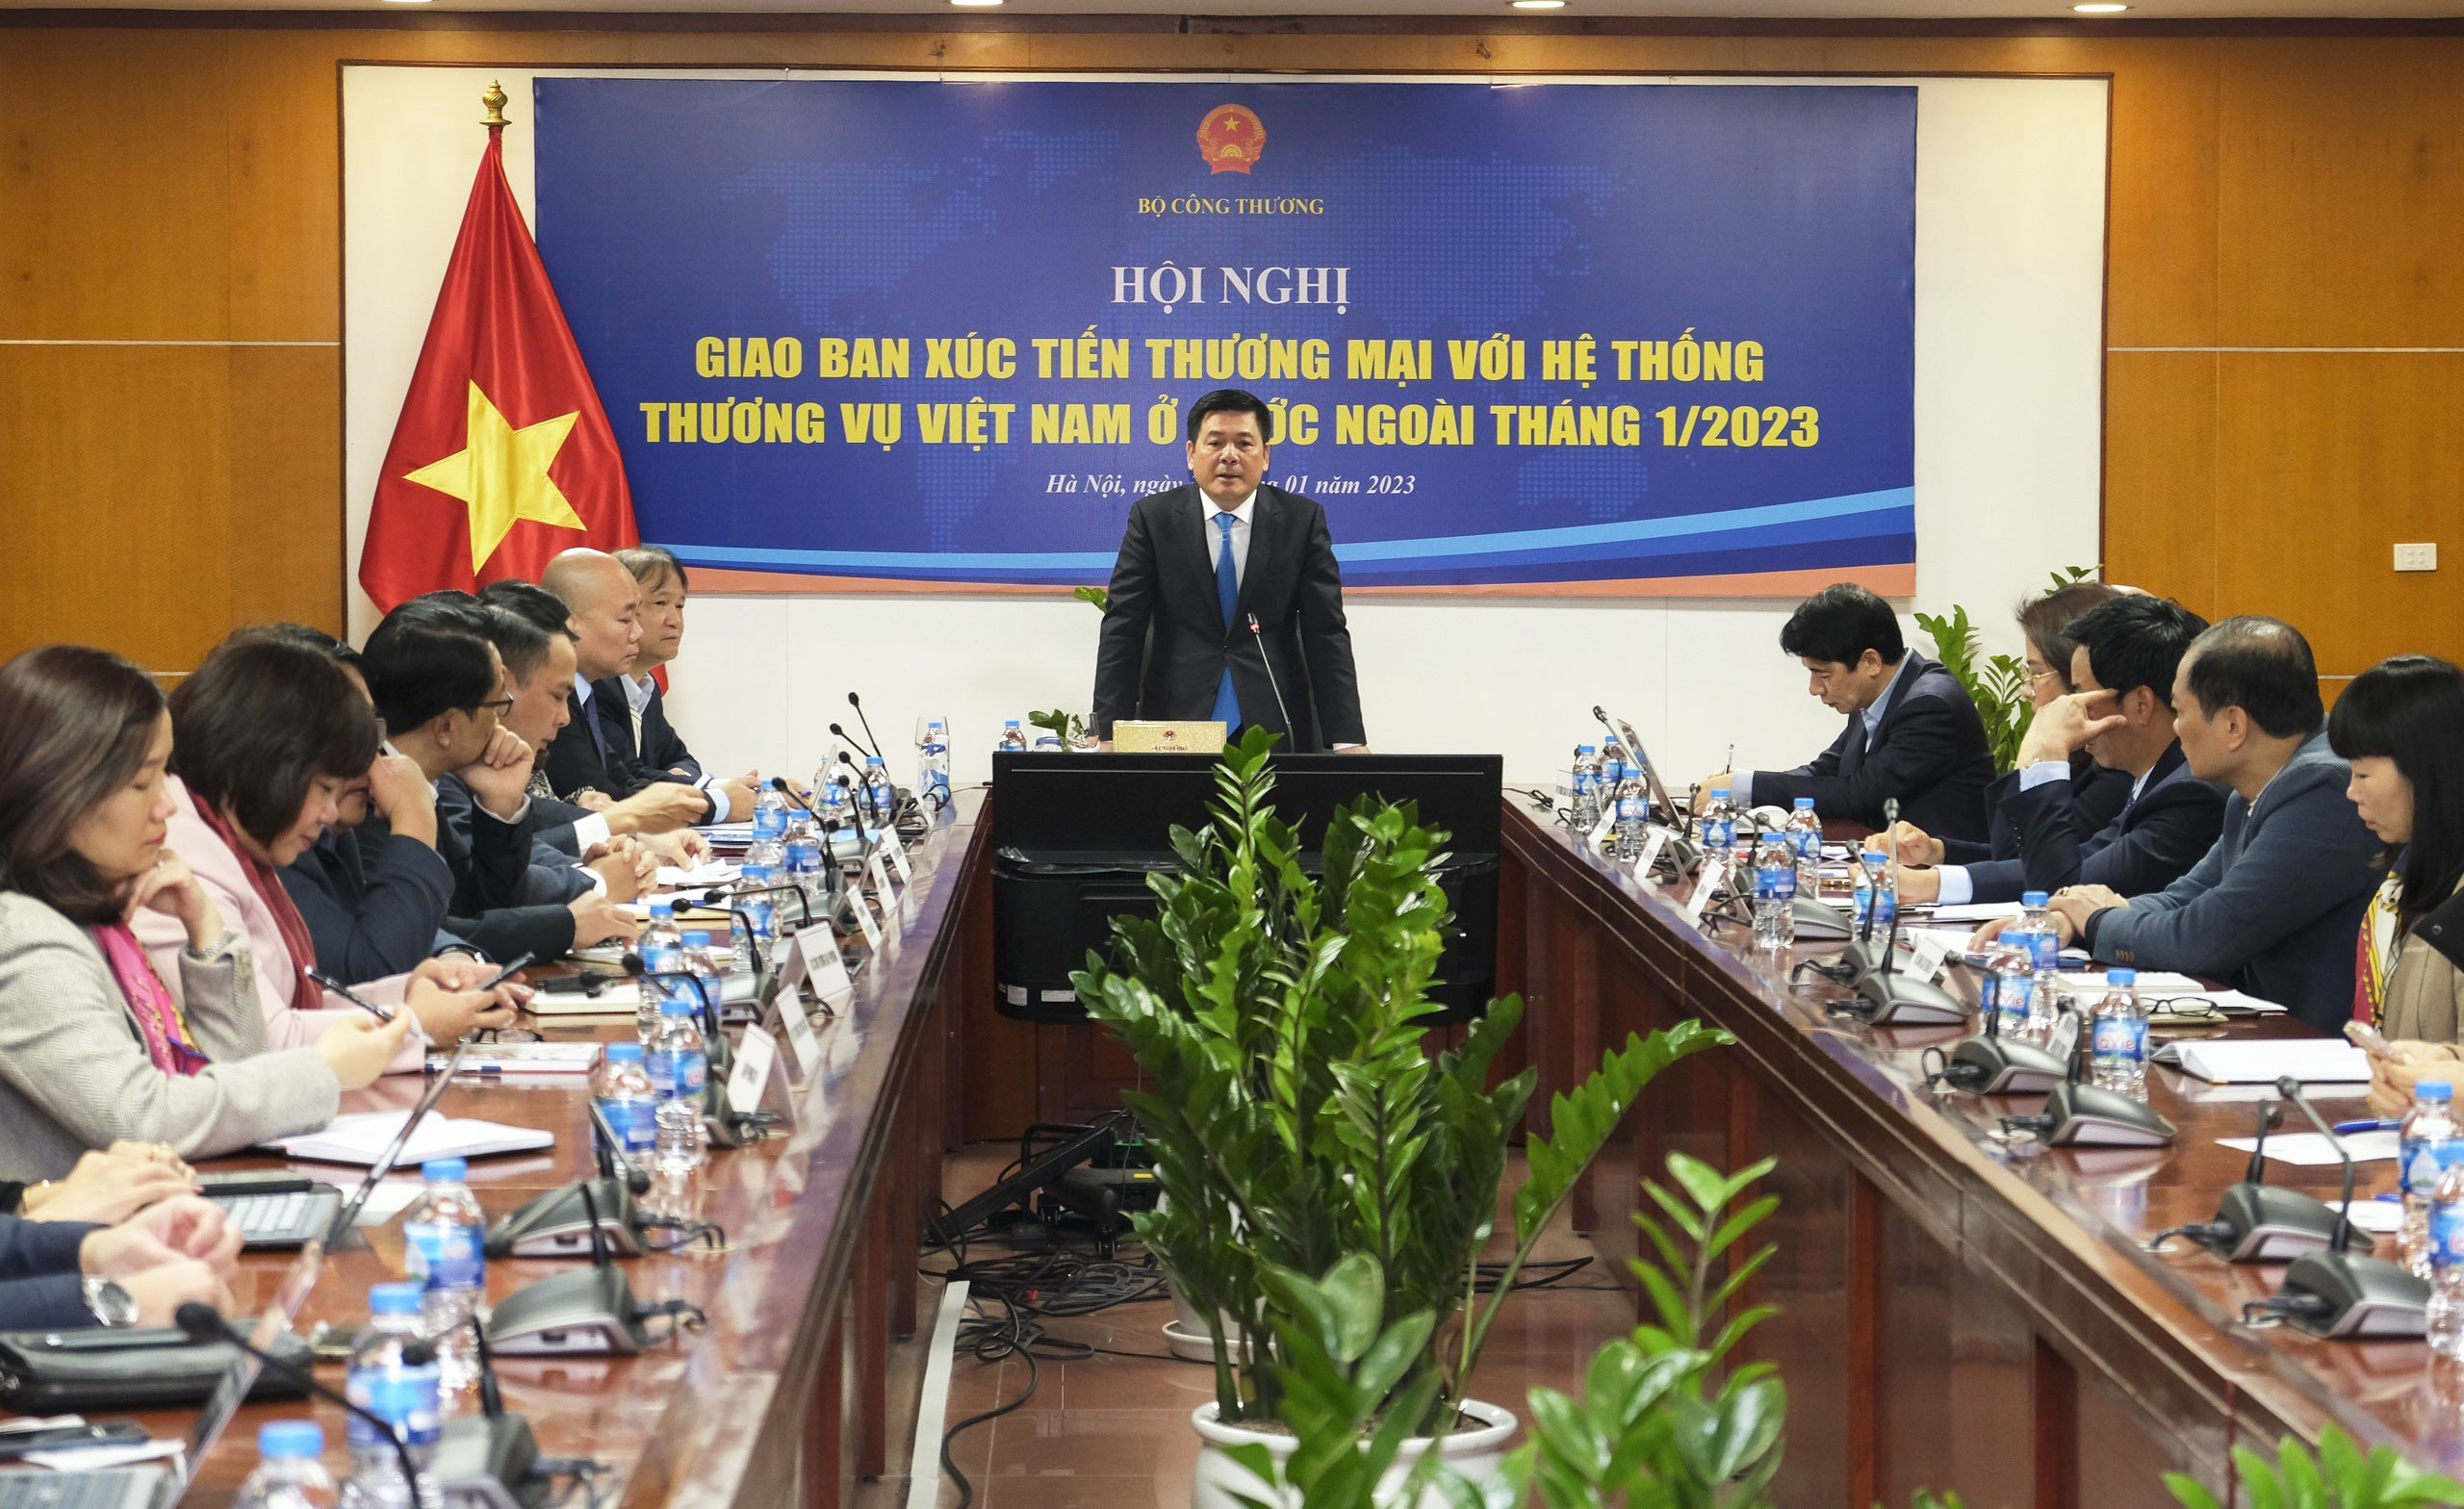 Công tác thương vụ Việt Nam ở nước ngoài: Góp phần hiện thực hóa mục tiêu hội nhập kinh tế quốc tế